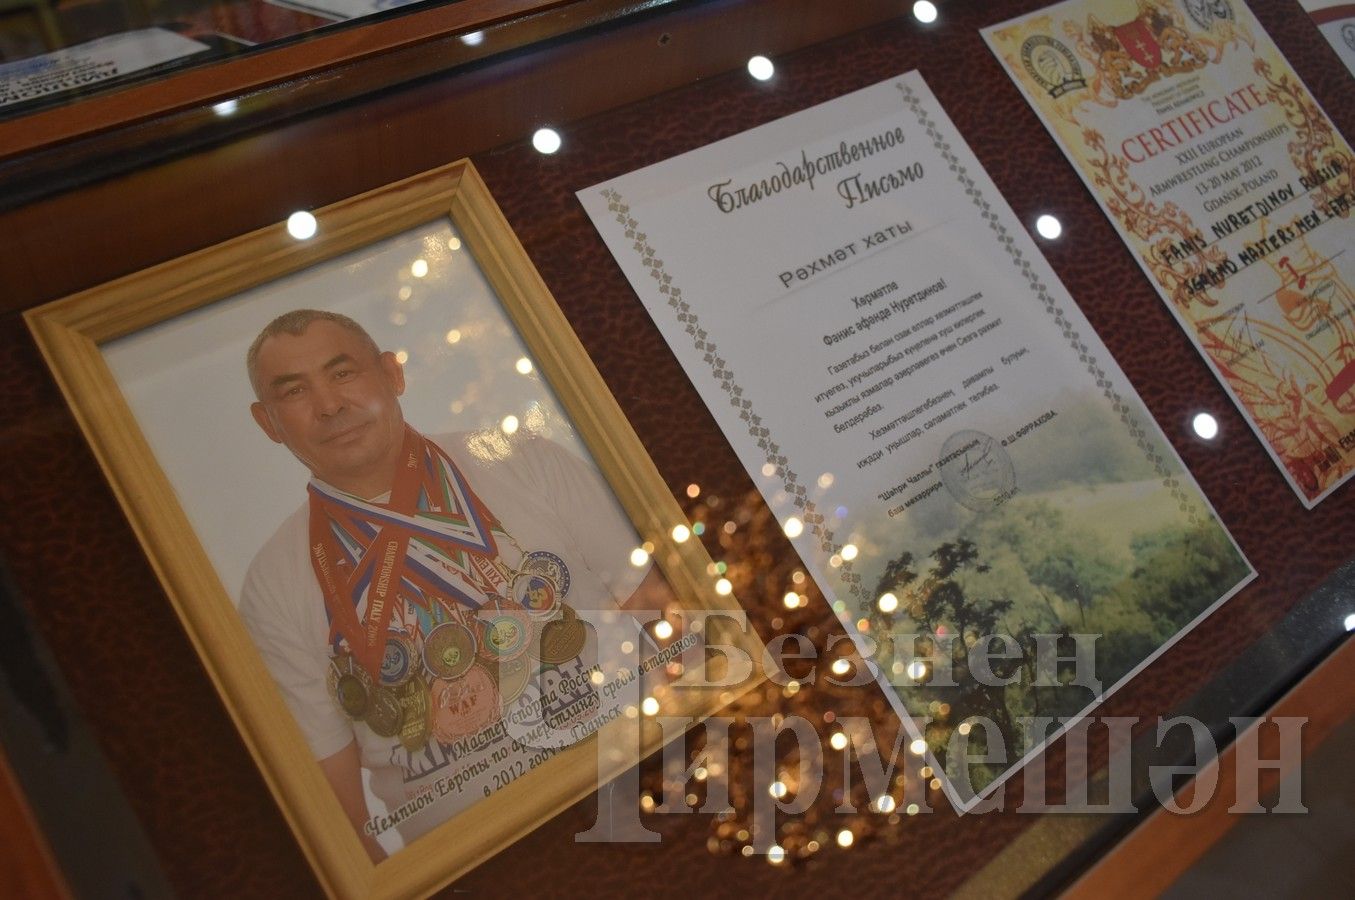 В Черемшане состоялась встреча с рекордсменом мира по армлифтингу Фанисом Нуретдиновым (ФОТОРЕПОРТАЖ)